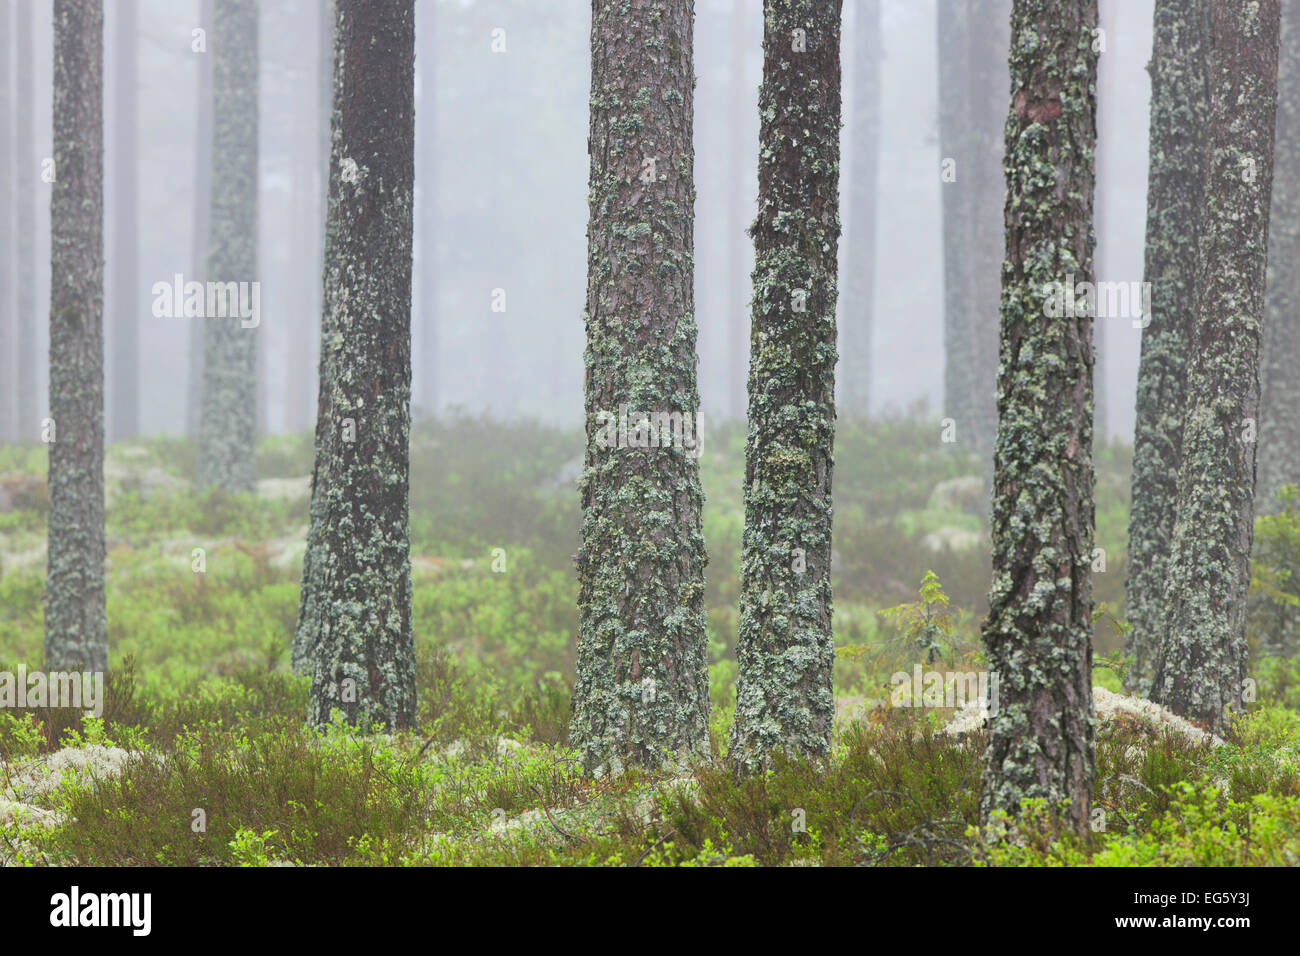 Di Pino silvestre (Pinus sylvestris), tronchi di alberi coperti nel tubo lichen (Hypogymnia physodes / Clairmont physodes) nel Bosco nebbioso Foto Stock